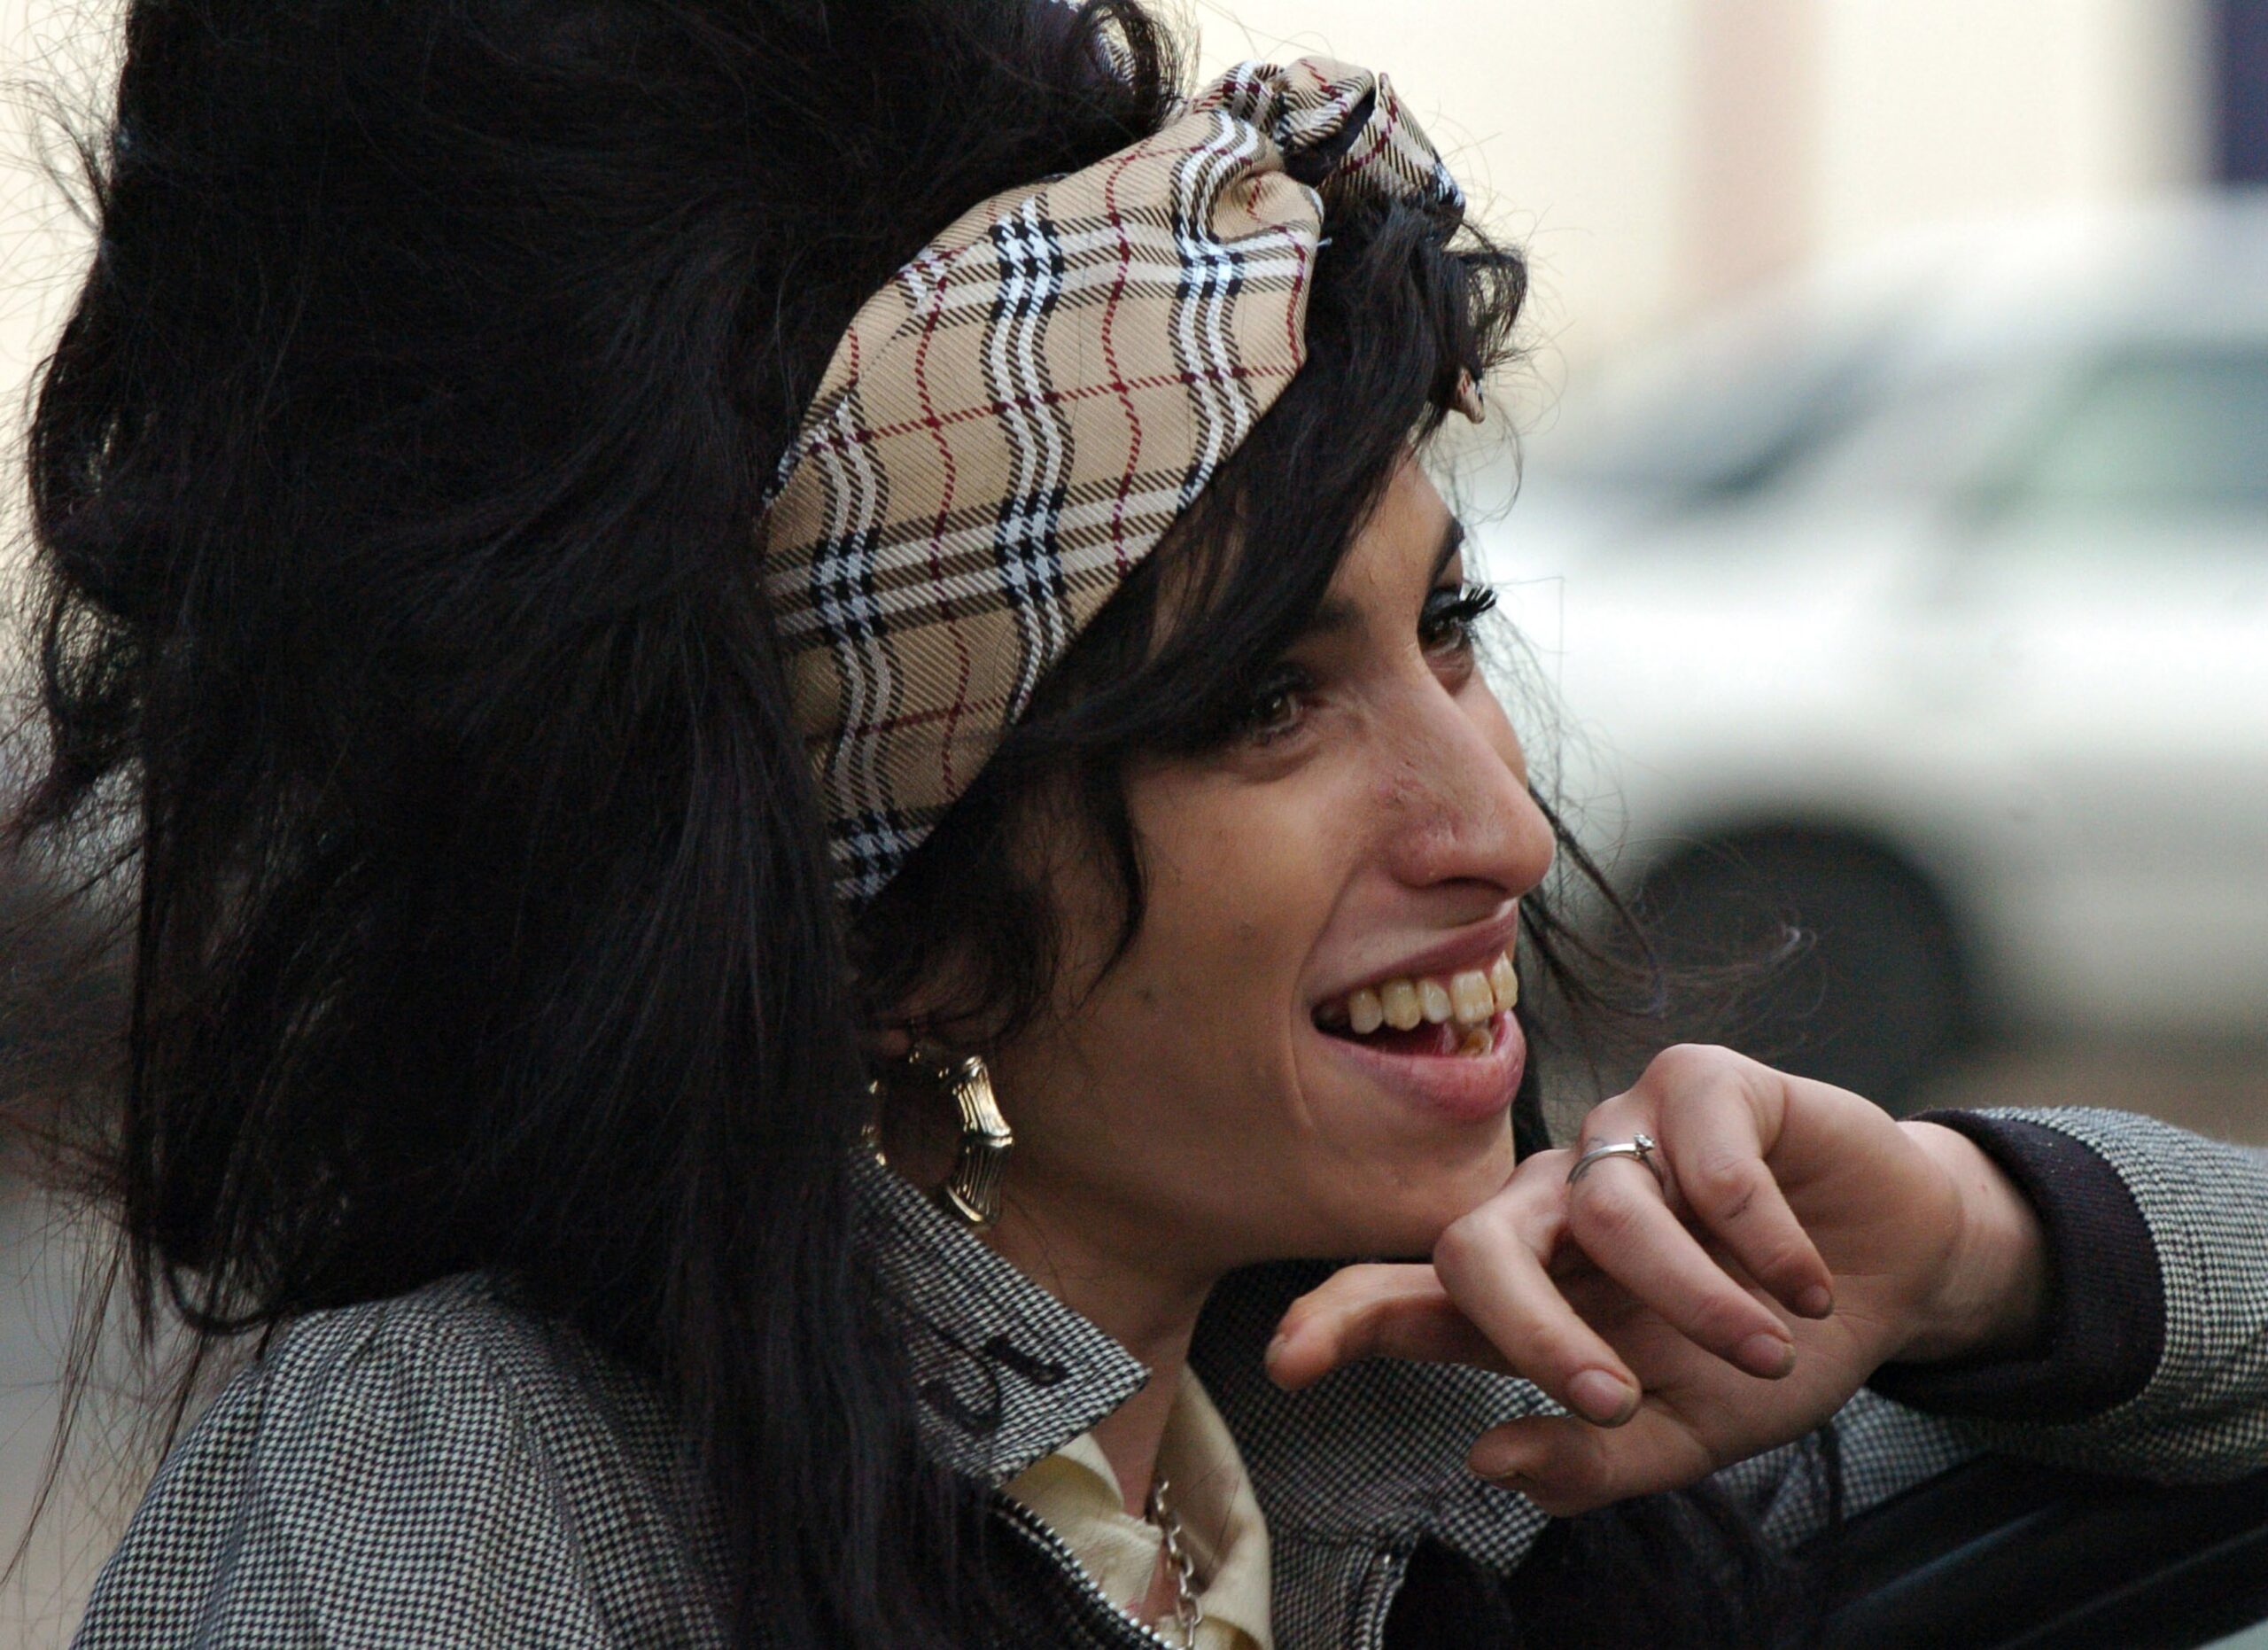 Amy Winehouse ar fi împlinit azi 34 de ani. 8 piese FORZA pe care nu le-ai mai ascultat de mult